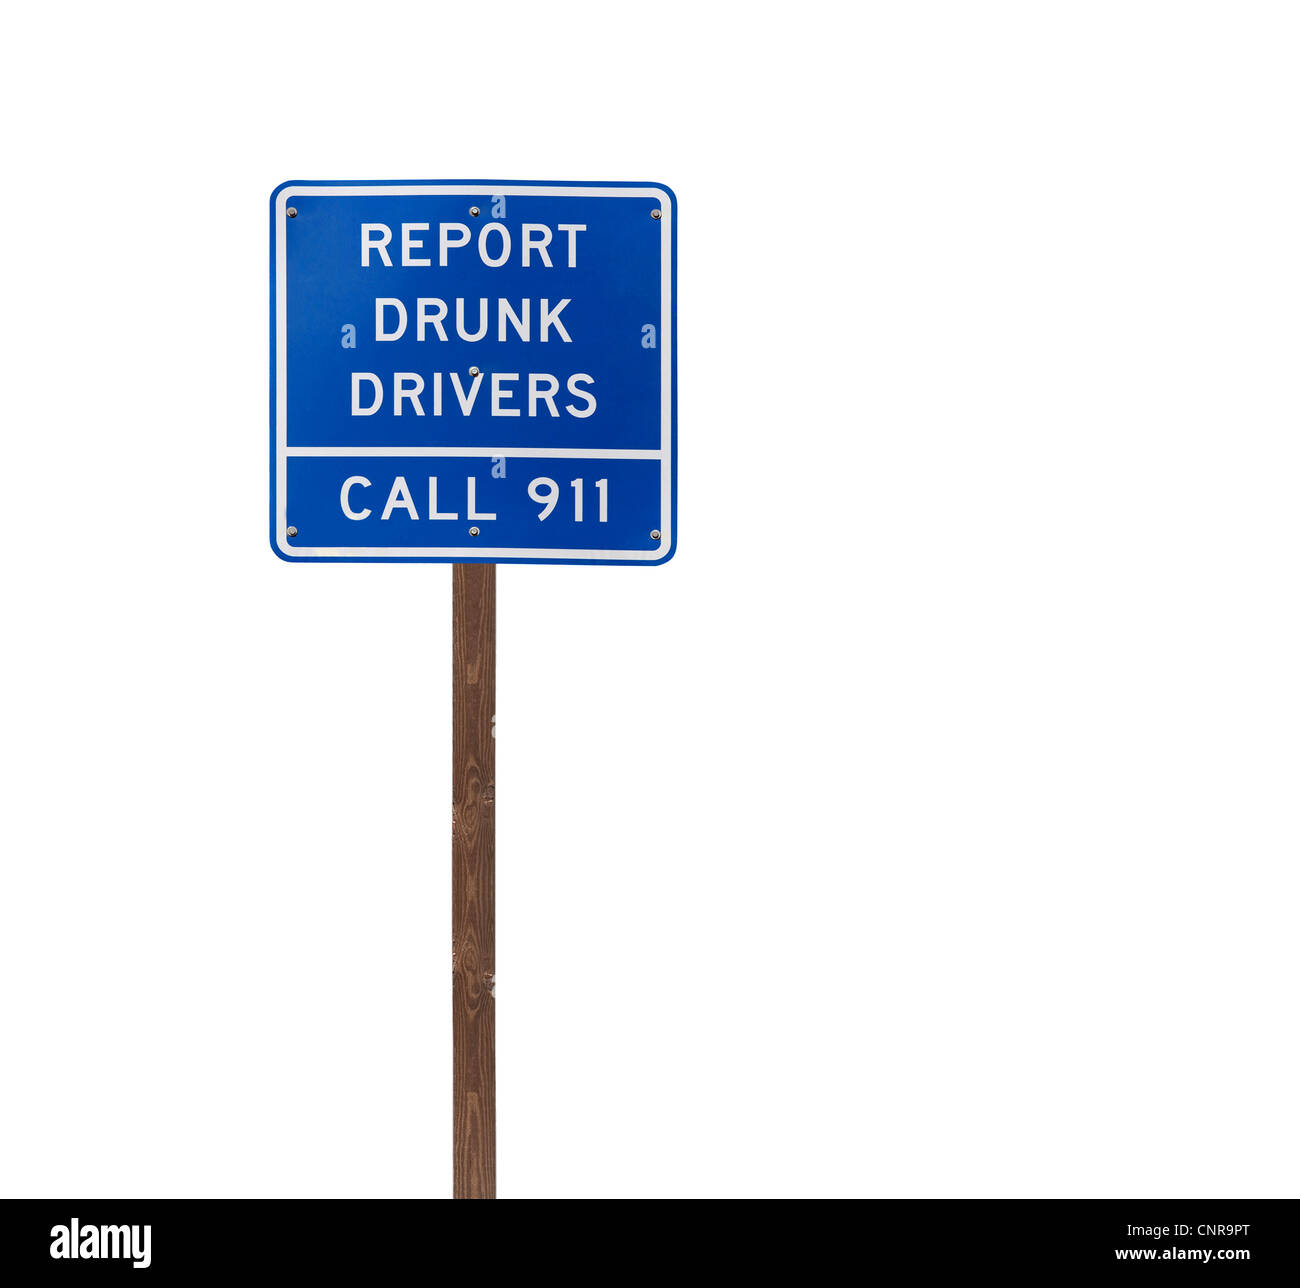 Hoch isolierten Bericht betrunkene Autofahrer auf einem hölzernen Pfosten. Stockfoto